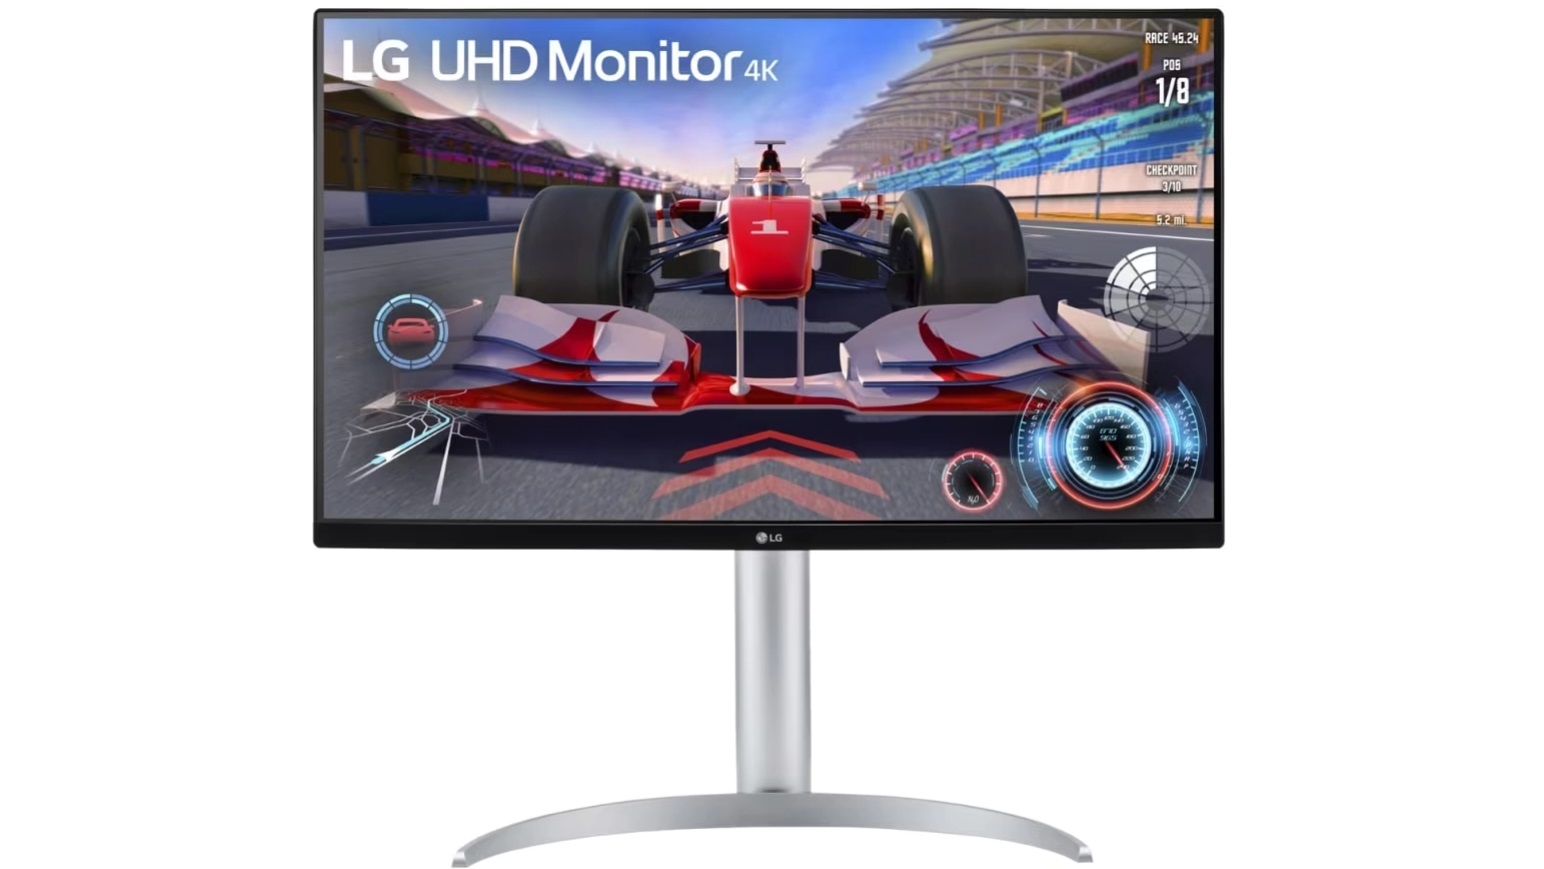 LG har lanserat en 4K-spelmonitor med 144 Hz bildfrekvens, HDMI 2.1 och DisplayPort 1.4